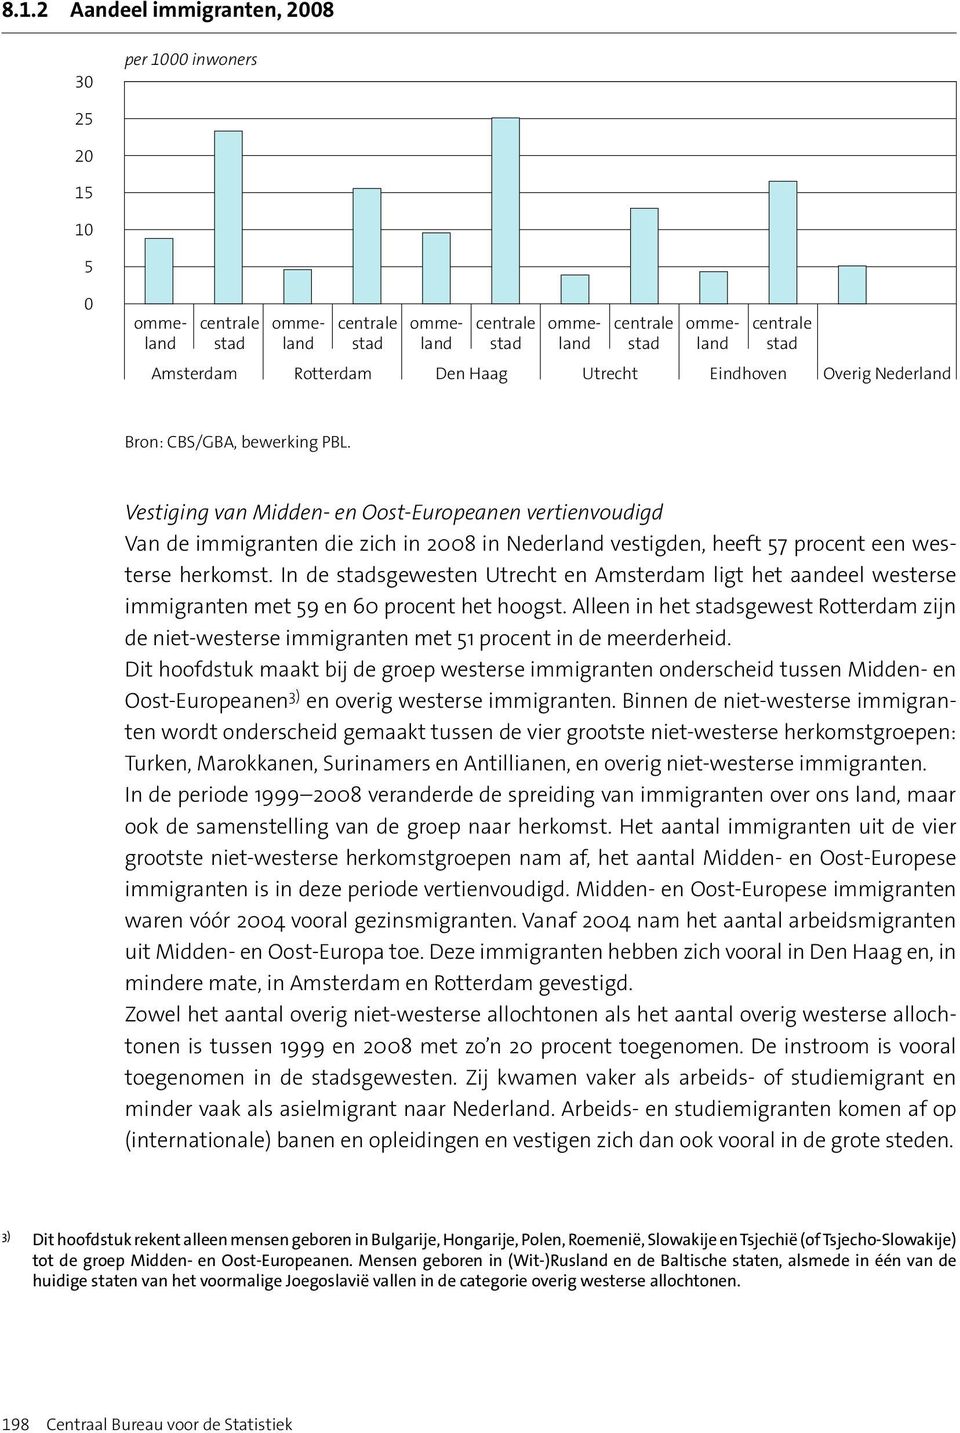 In de stadsgewesten Utrecht en Amsterdam ligt het aandeel westerse immigranten met 59 en 6 procent het hoogst.